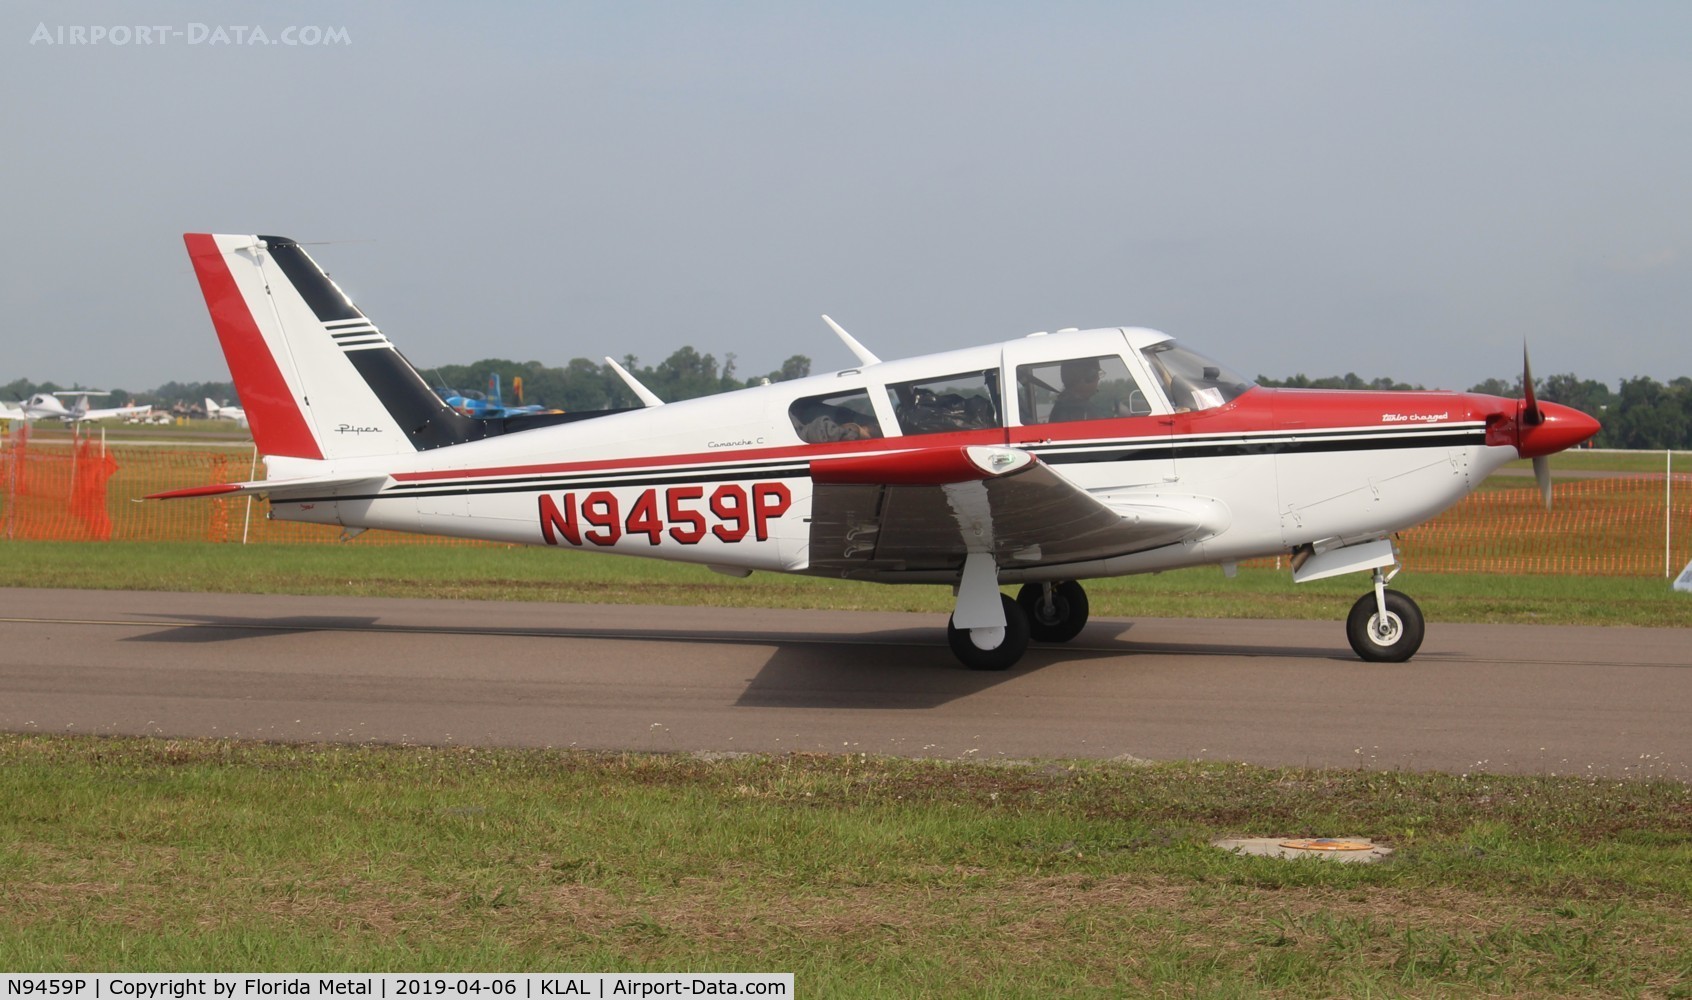 N9459P, 1971 Piper PA-24-260 C/N 24-4967, PA-24